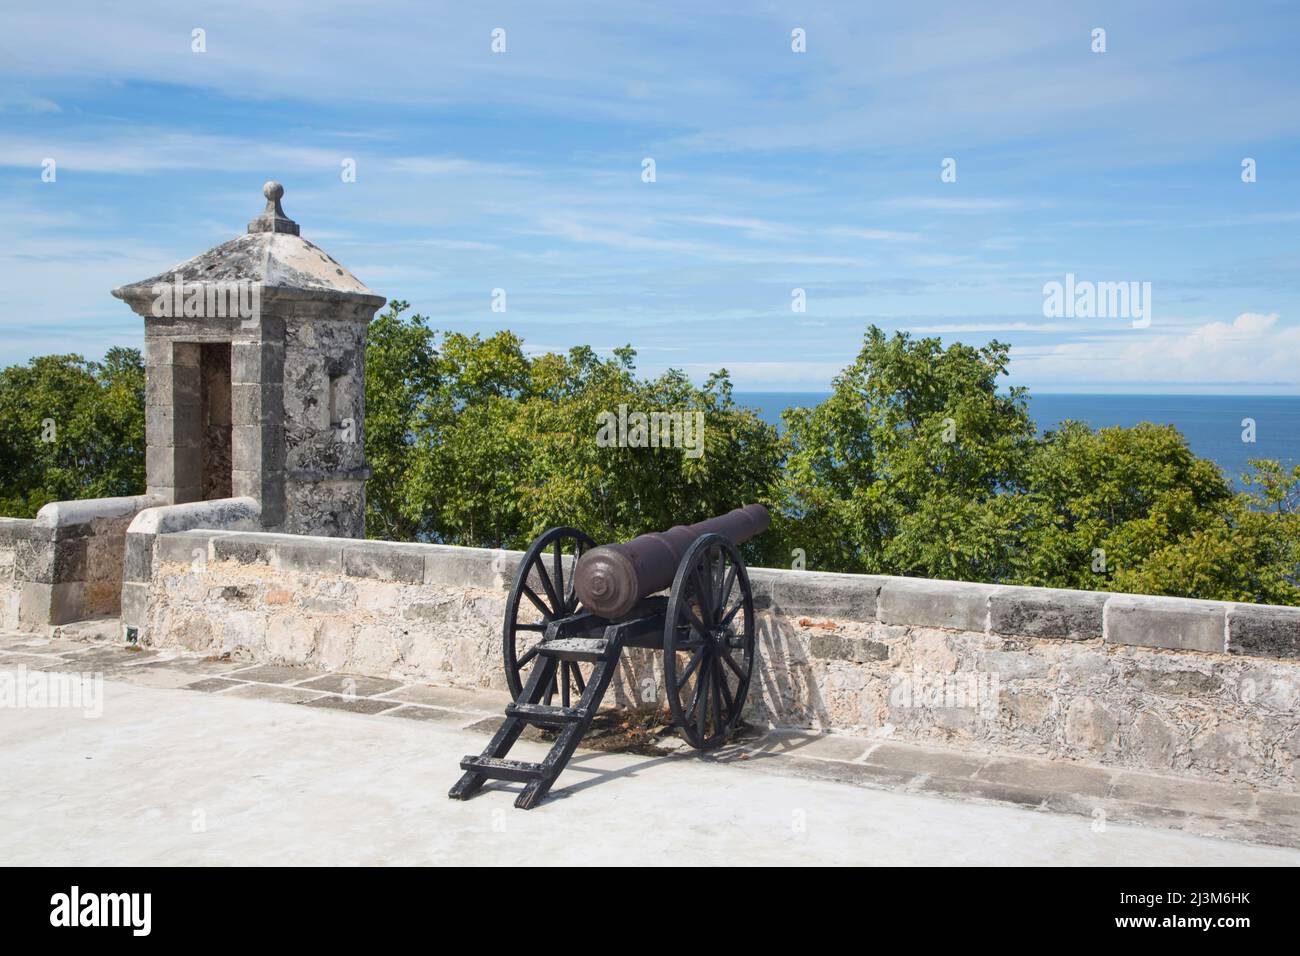 Canon au fort de San Jose el Alto, Campeche, Mexique; Campeche, État de Campeche, Mexique Banque D'Images